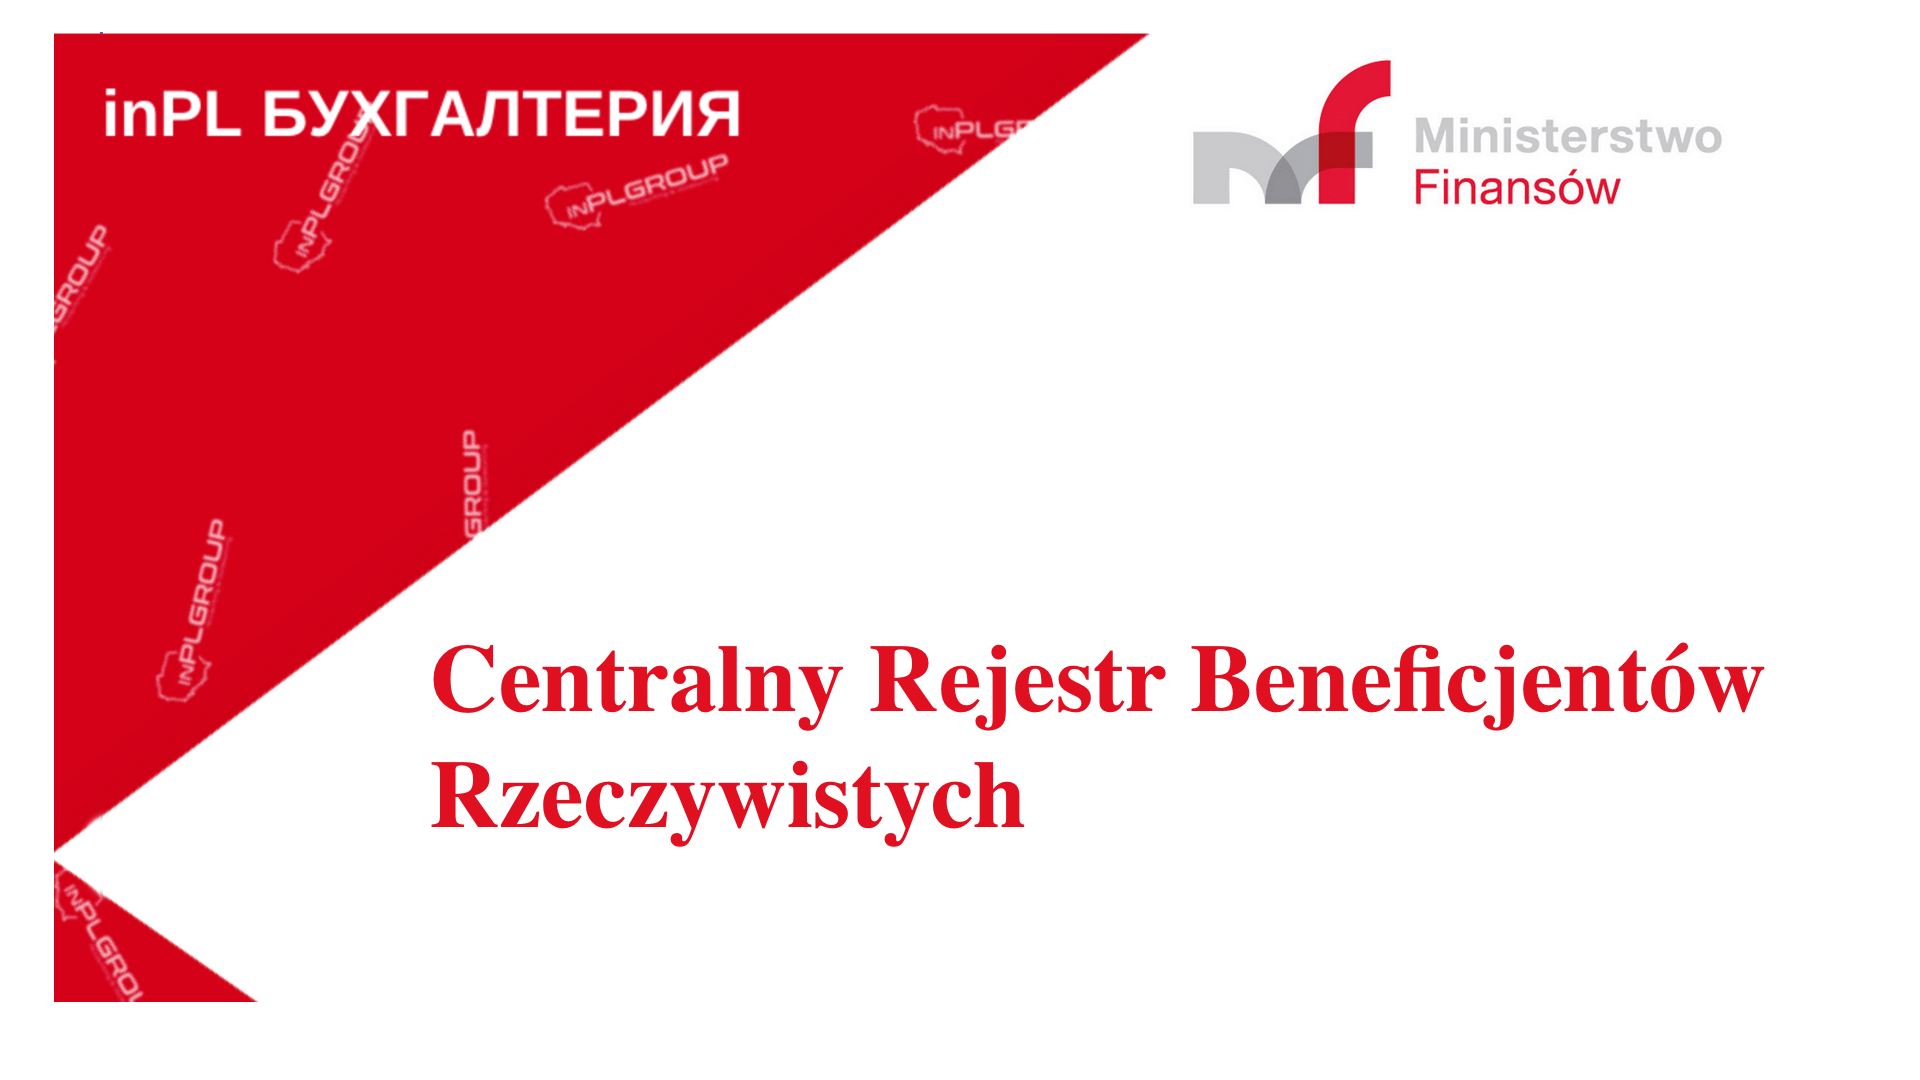 Centralny Rejestr Beneficjentów Rzeczywistych (CRBR)